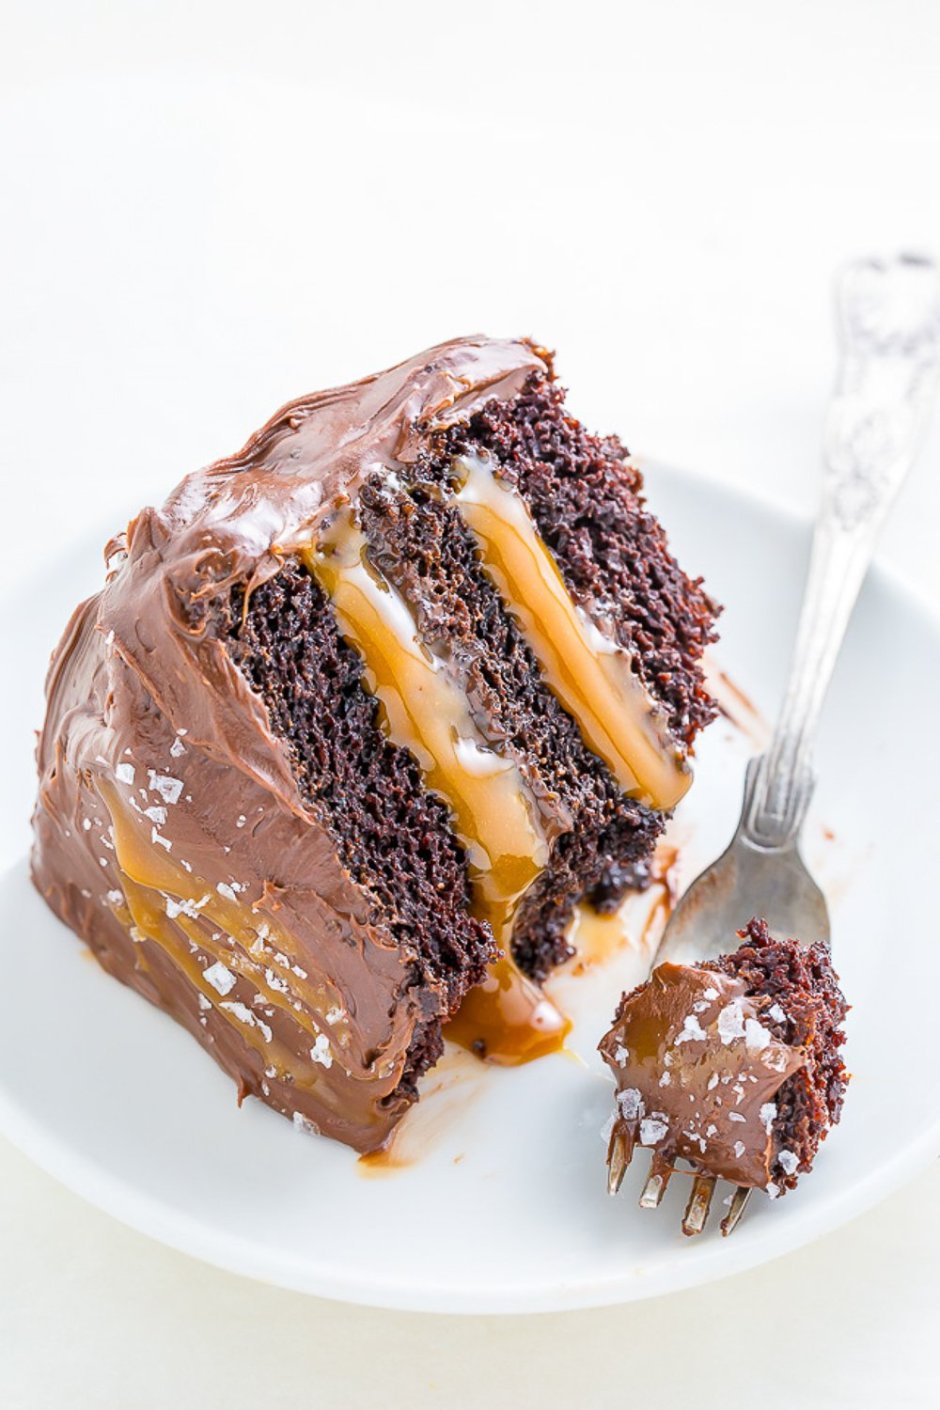 Шоколадный торт с карамелью